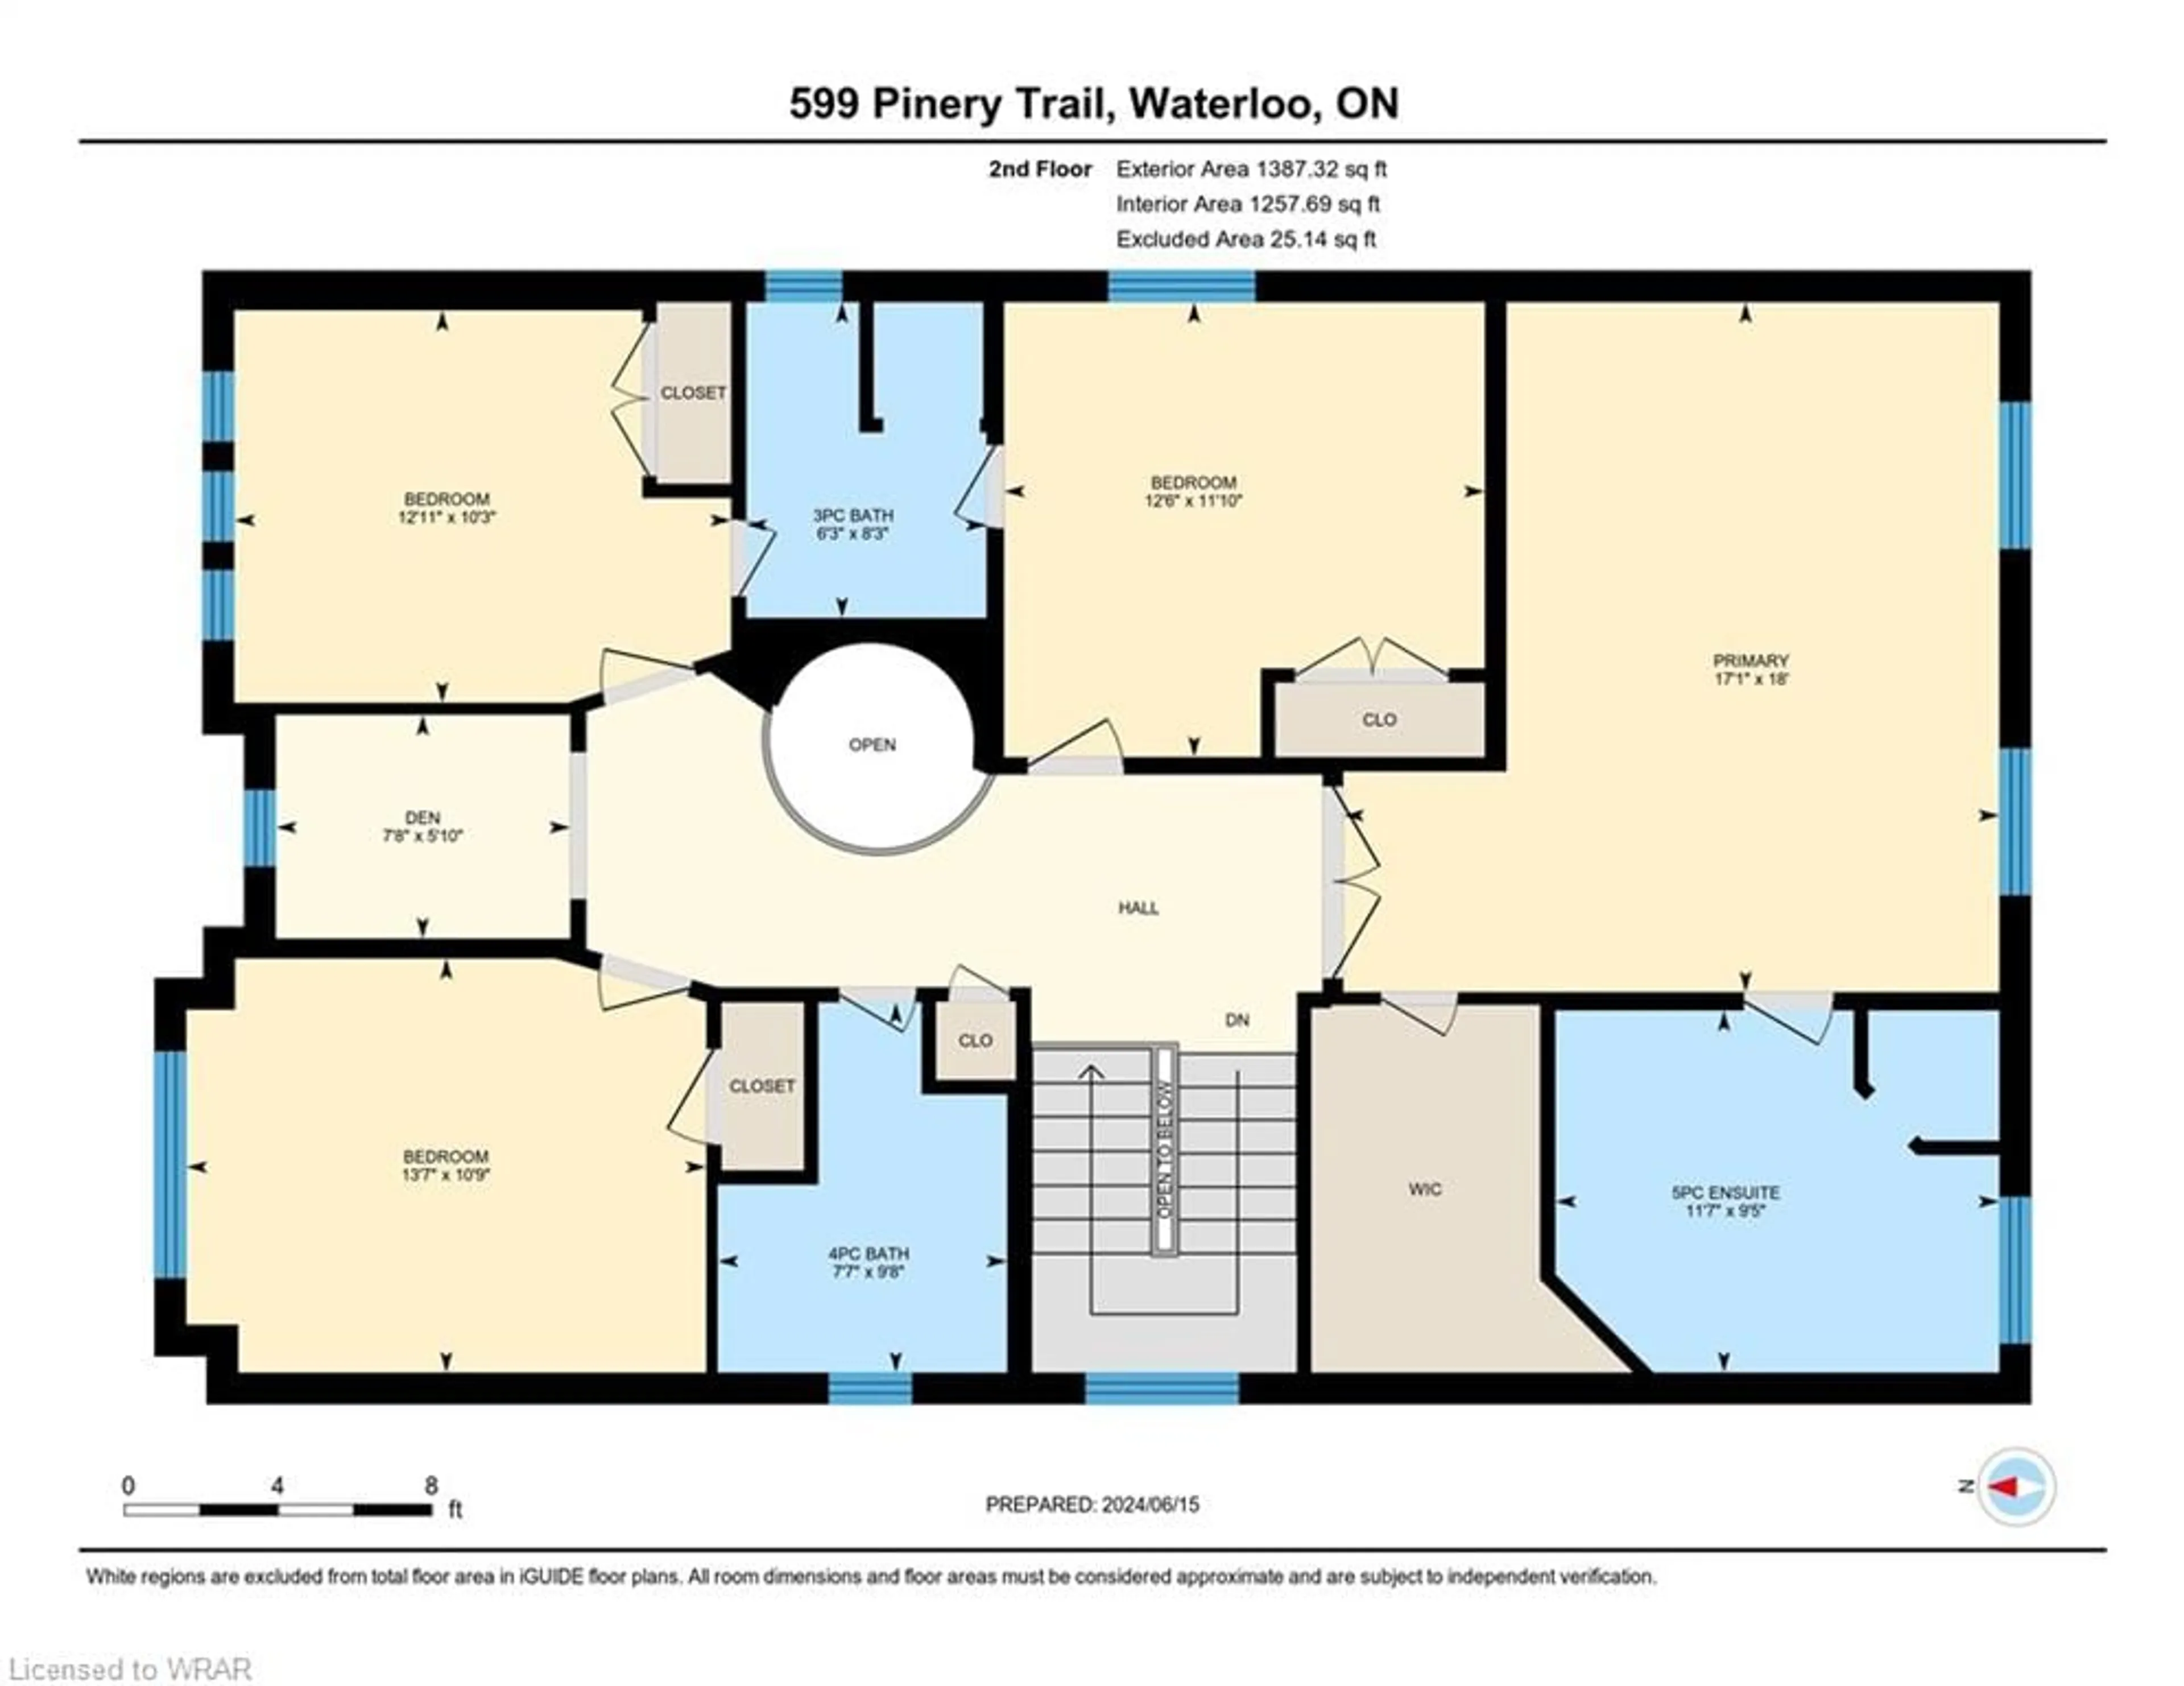 Floor plan for 599 Pinery Trail, Waterloo Ontario N2V 2Y6